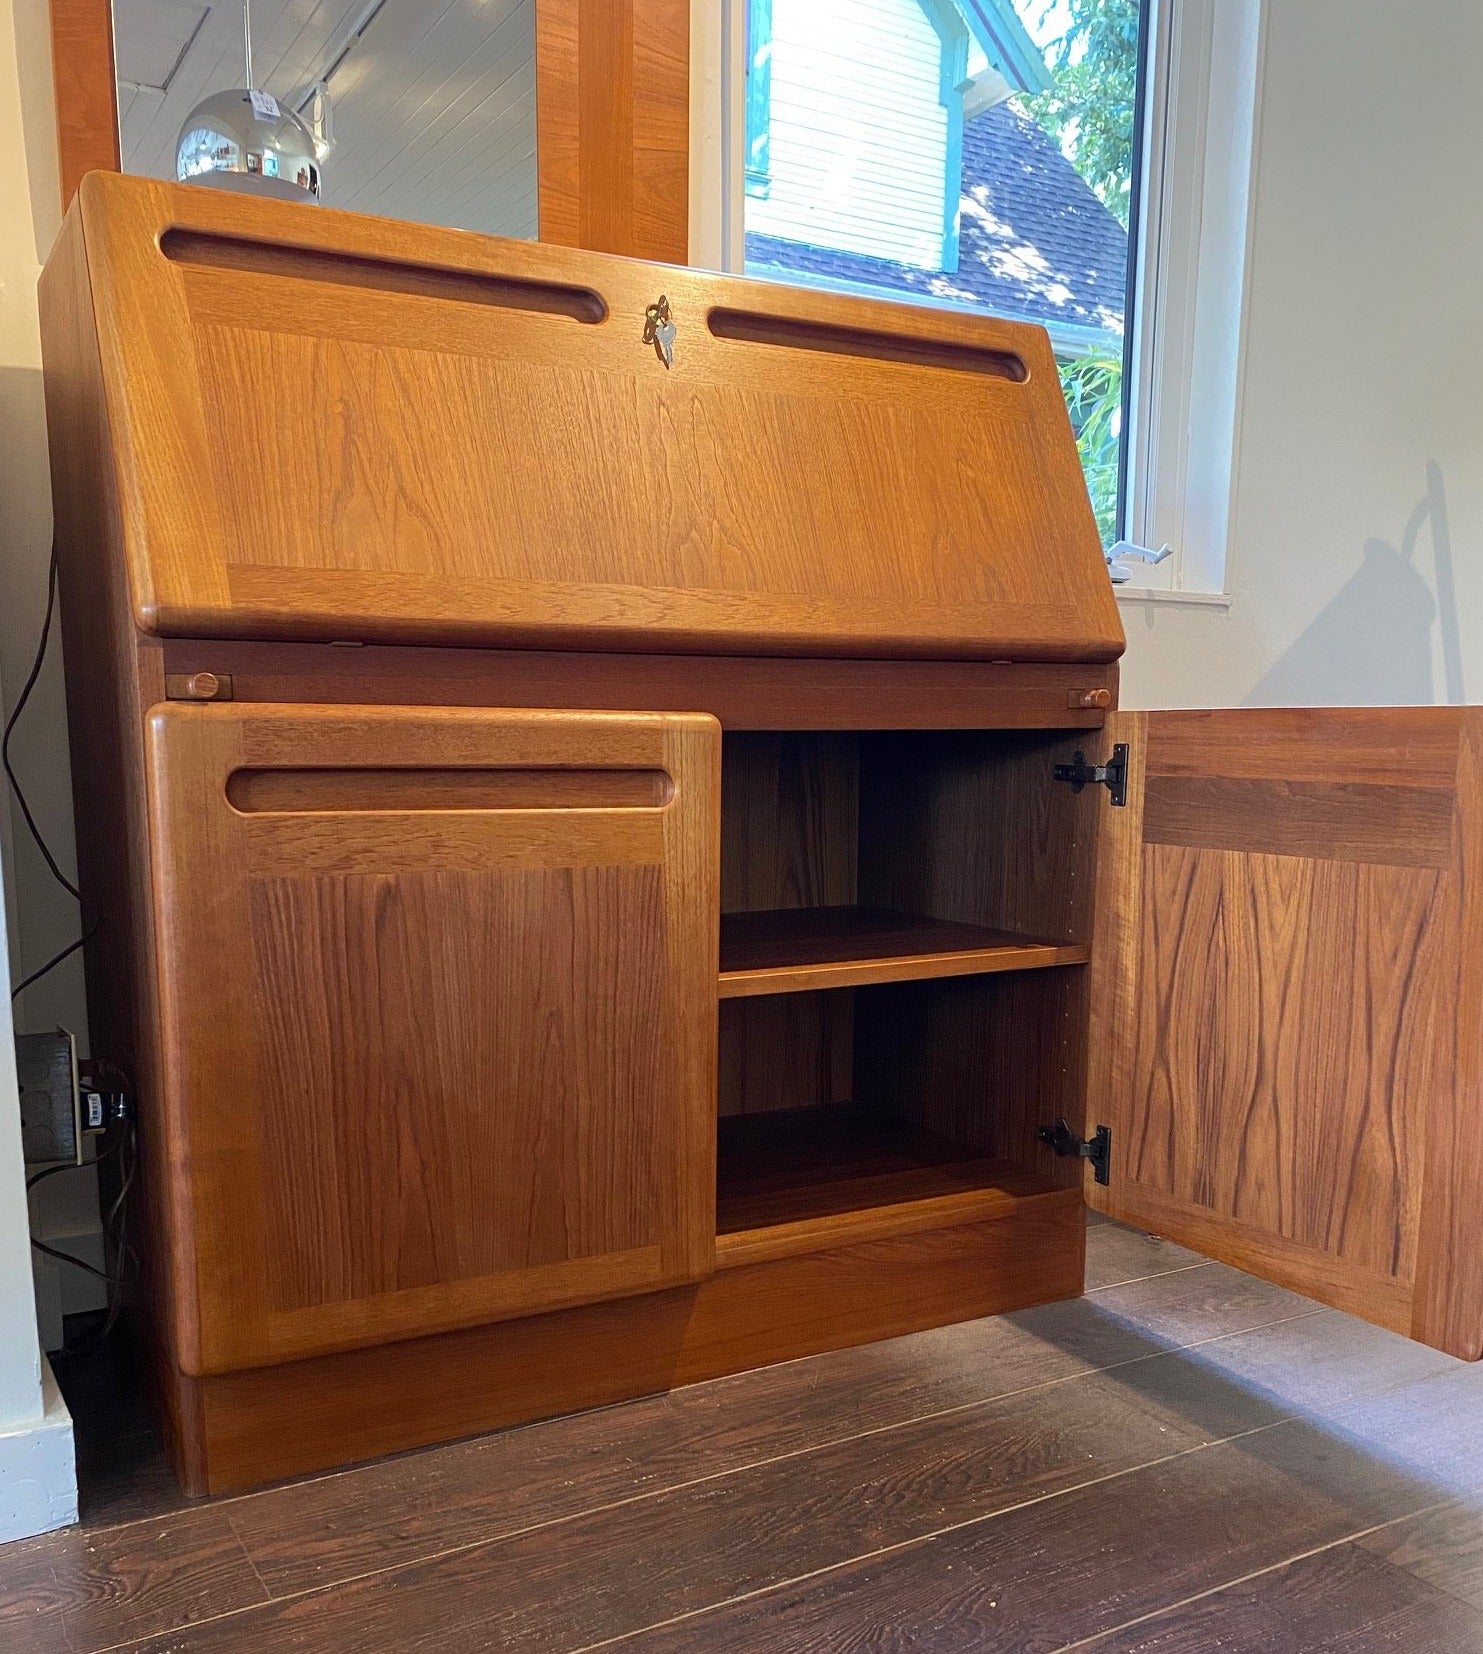 Danish Midcentury teak secretary with one lower cabinet door open revealing adjustable shelf- Cook Street Vintage